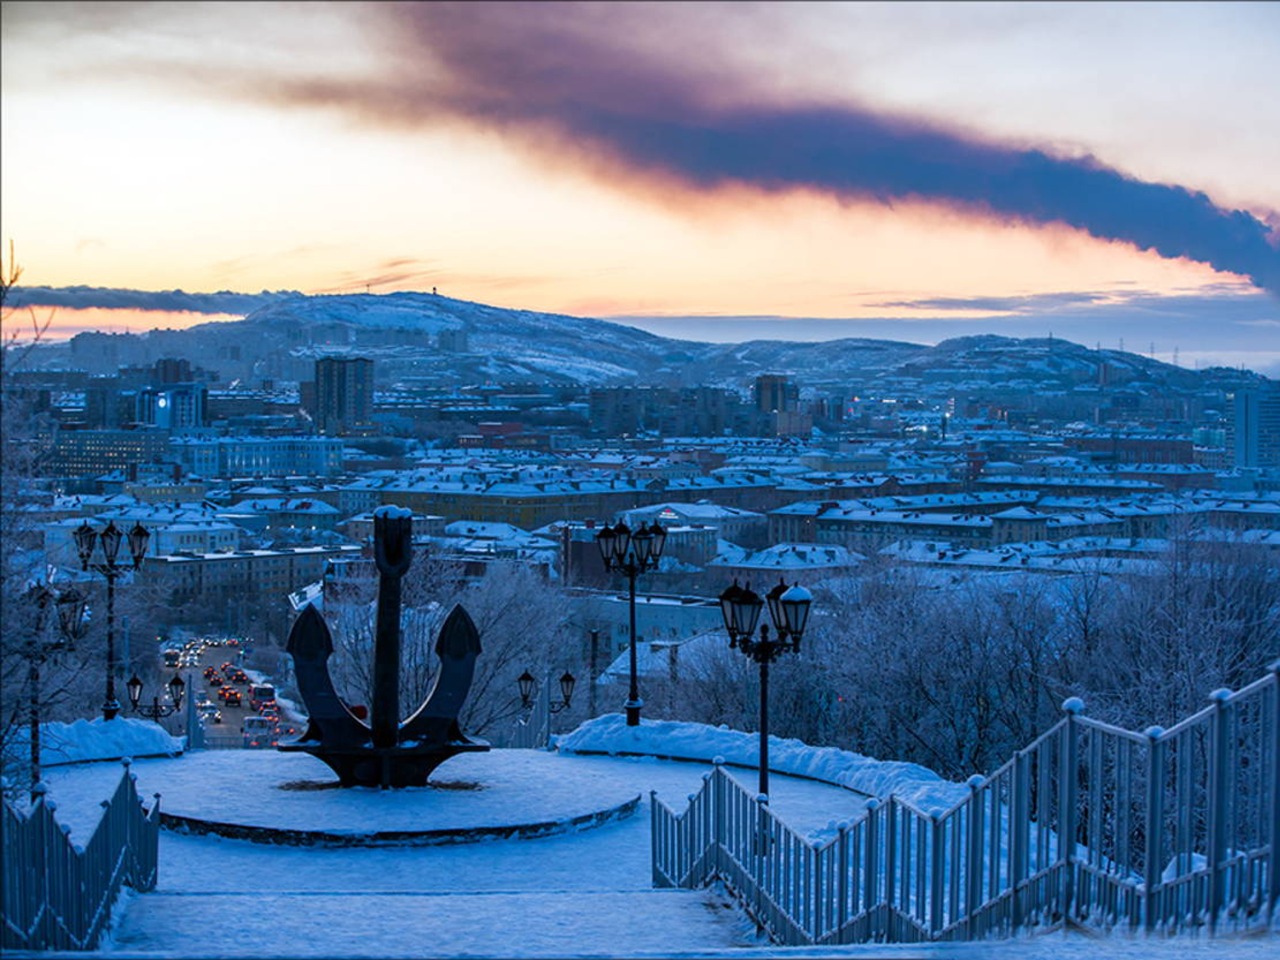 Мурманск — столица Заполярья! | Цена 7300₽, отзывы, описание экскурсии